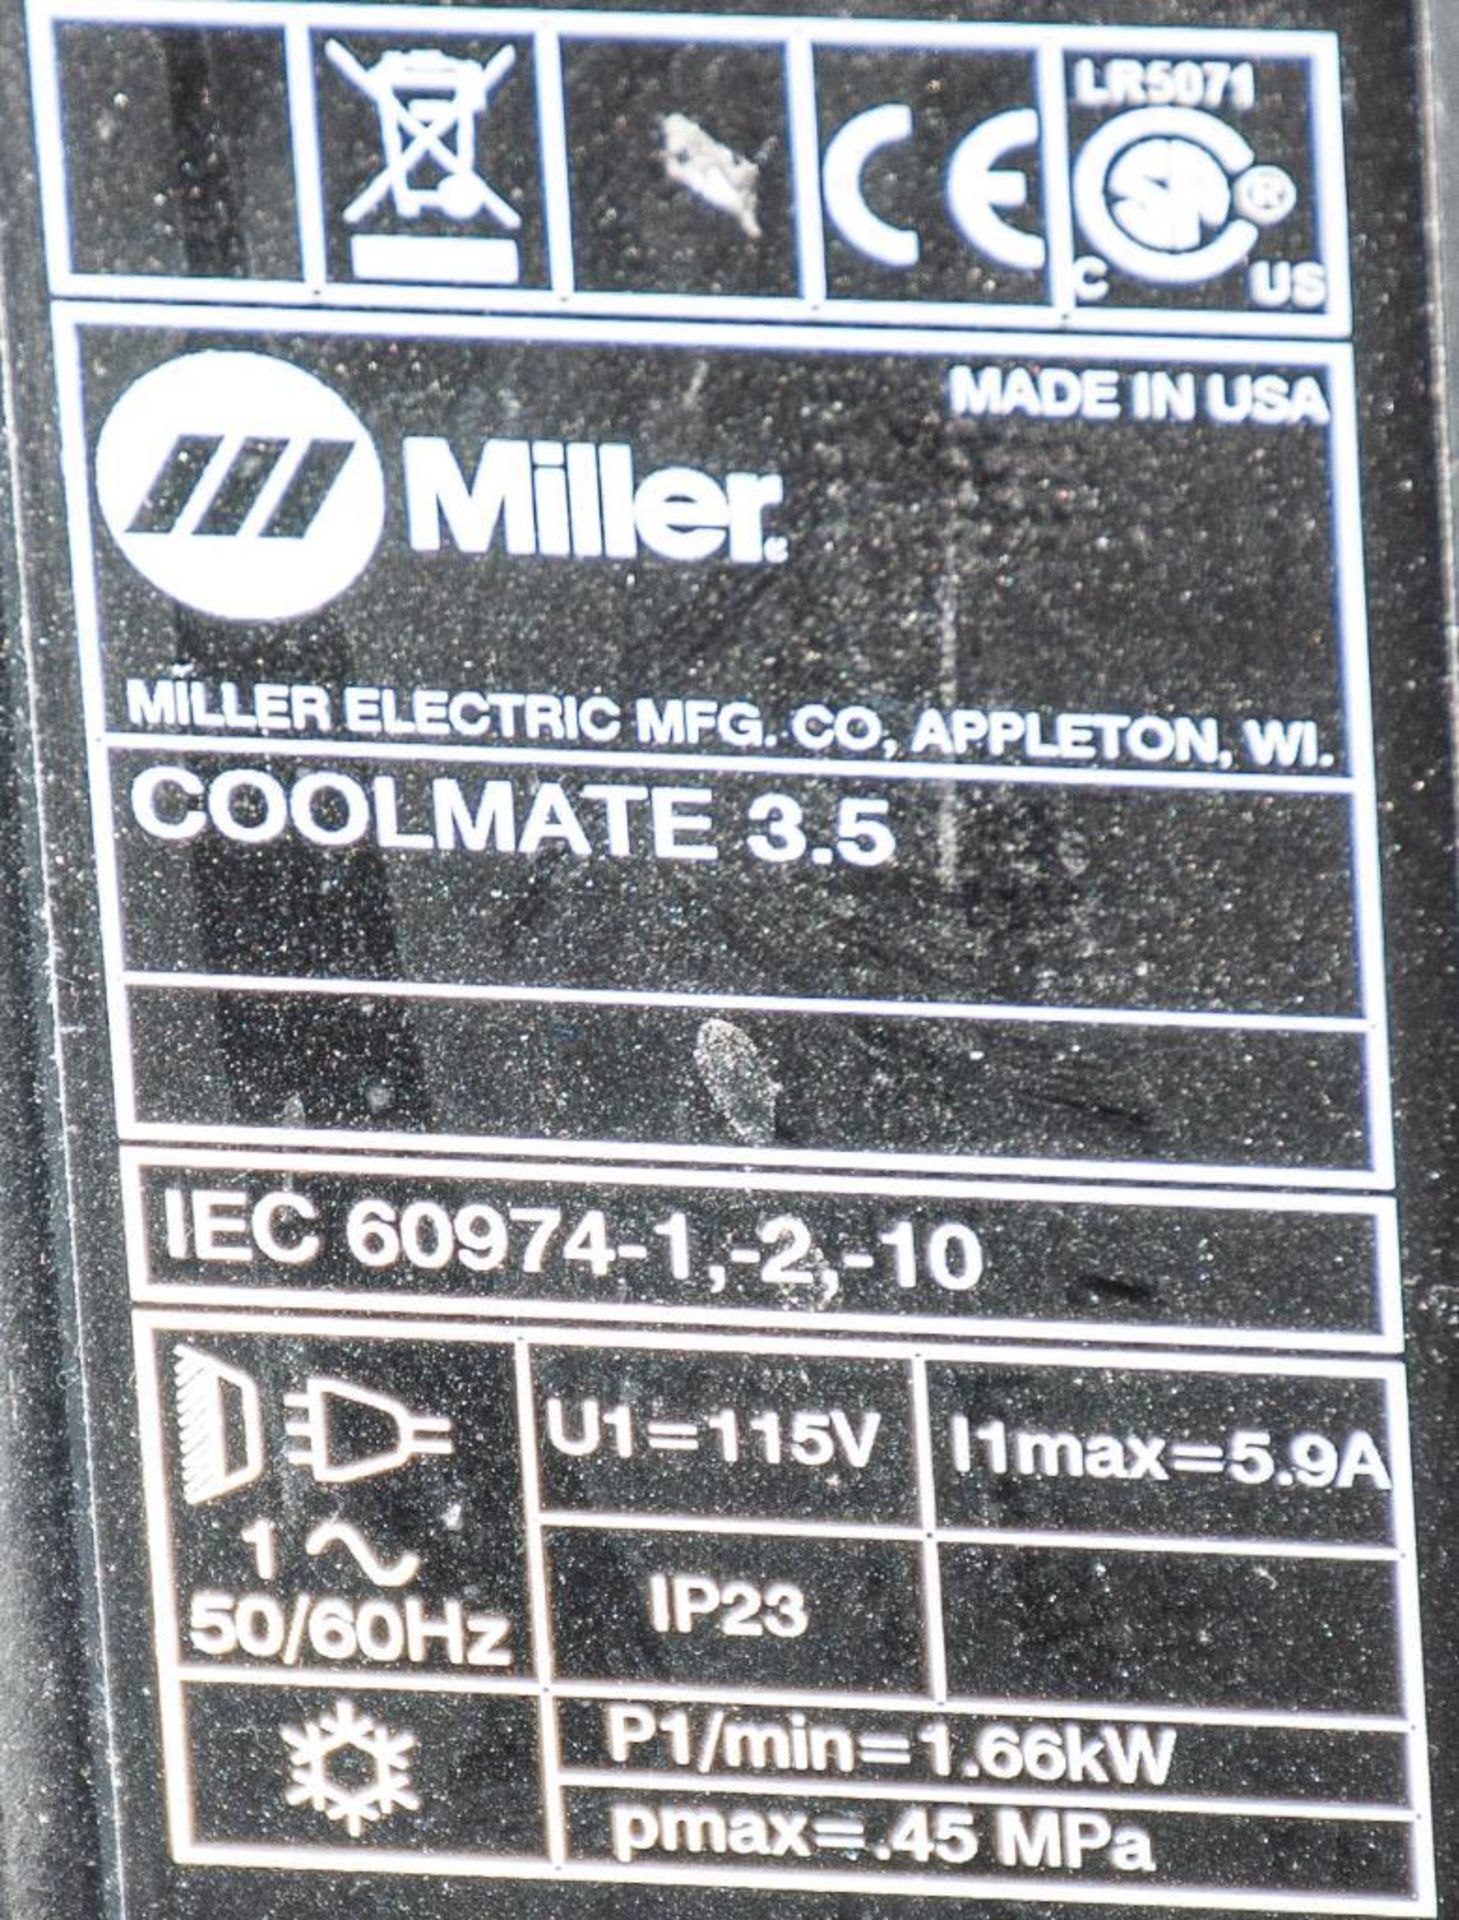 Miller Tig Welder Dynasty 350, Stock # 907204001, s/n MC420362L, w/Miller Coolmate 3.5, Tig Torch, C - Image 6 of 6